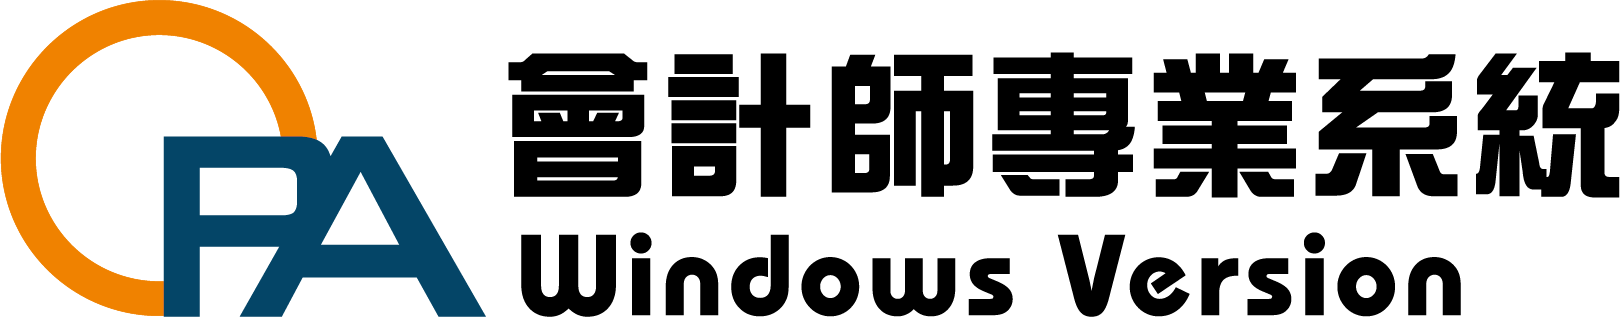 cpa logo